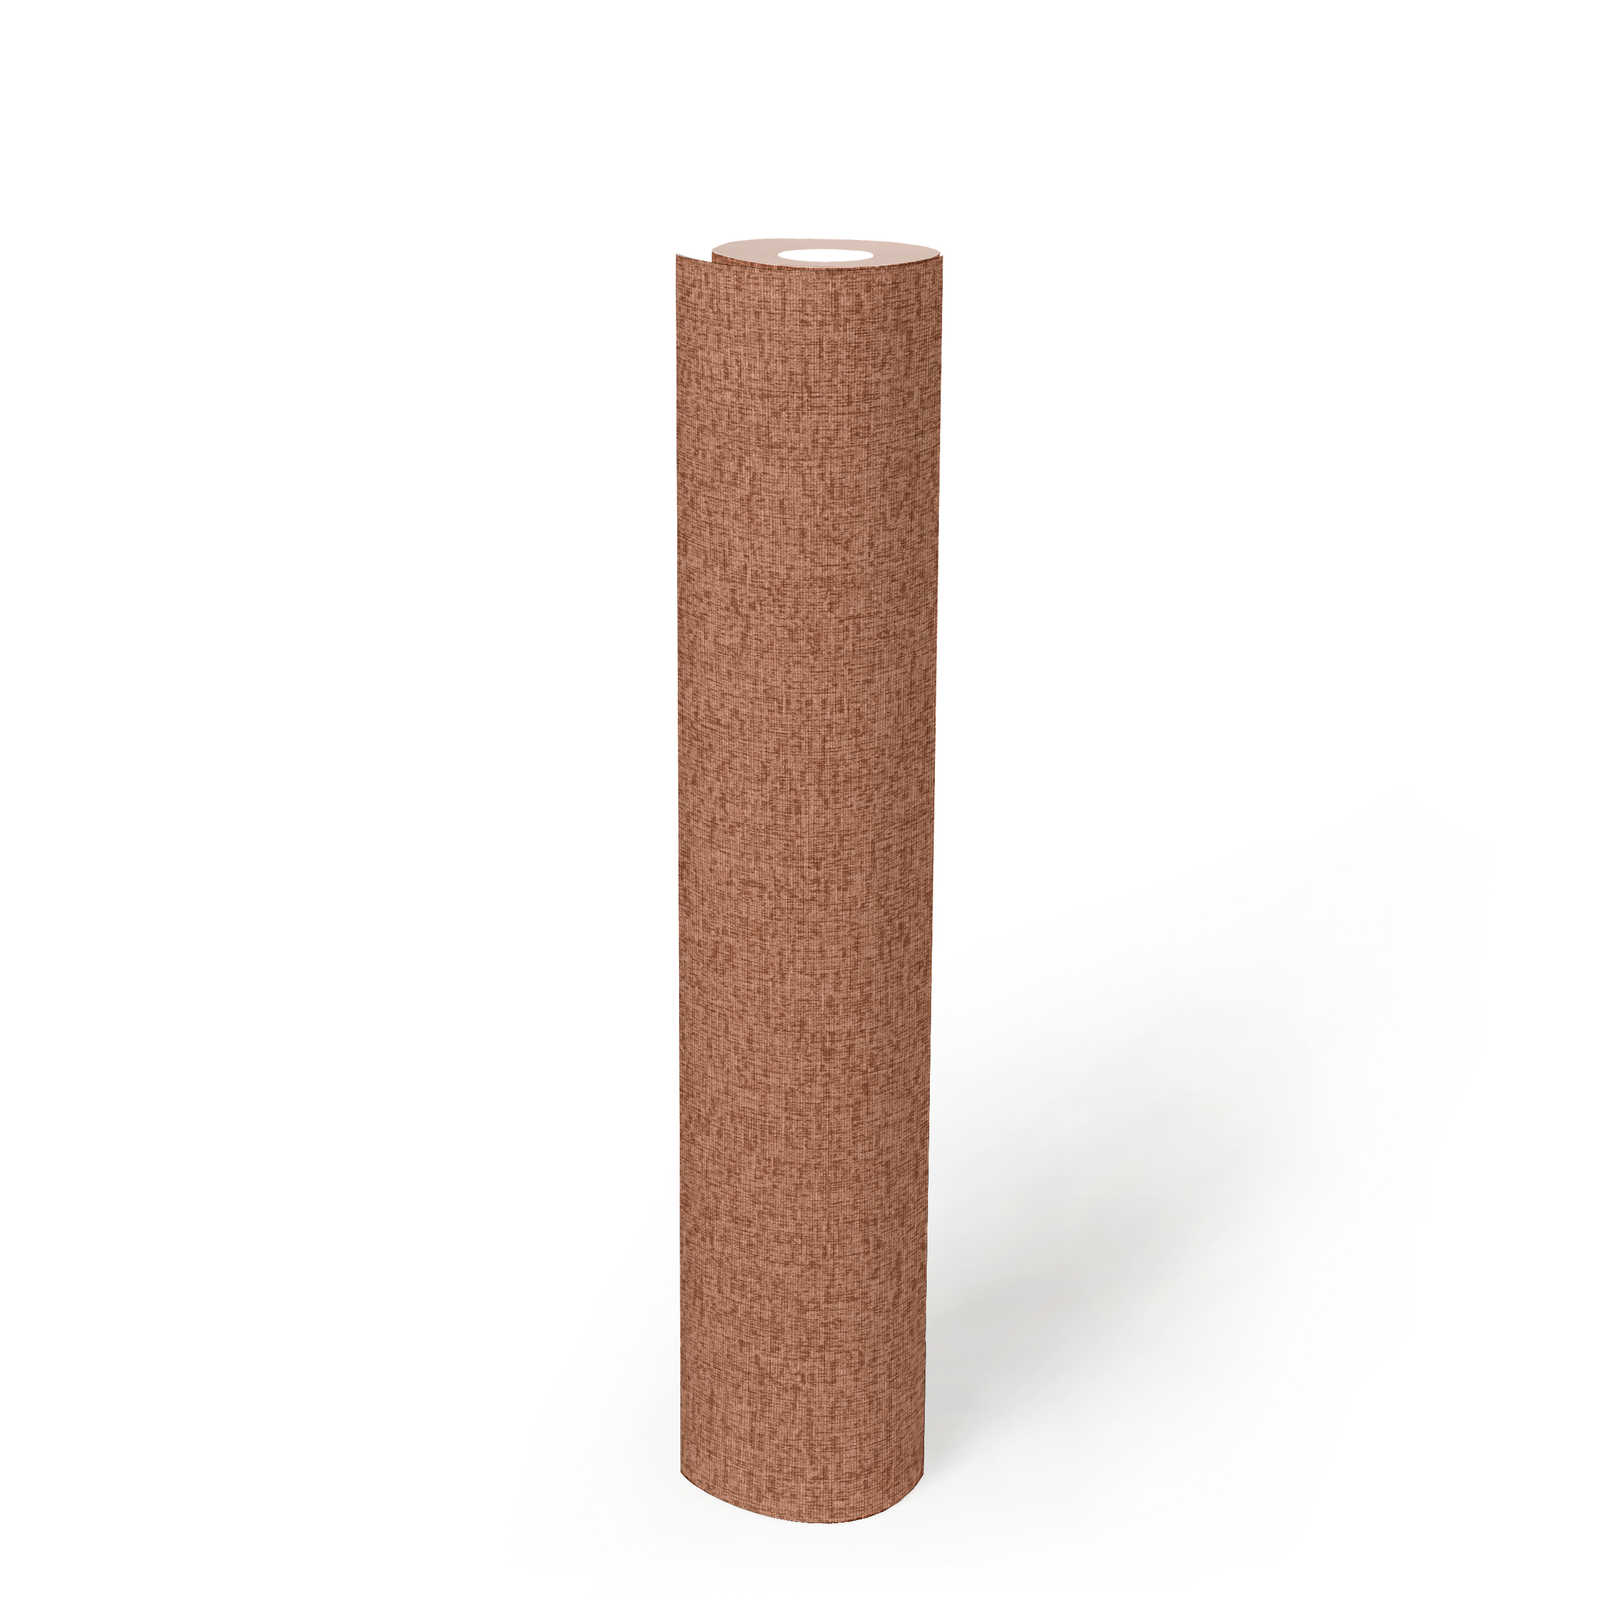             papier peint en papier intissé uni à structure tissée, mat - rouge, orange
        